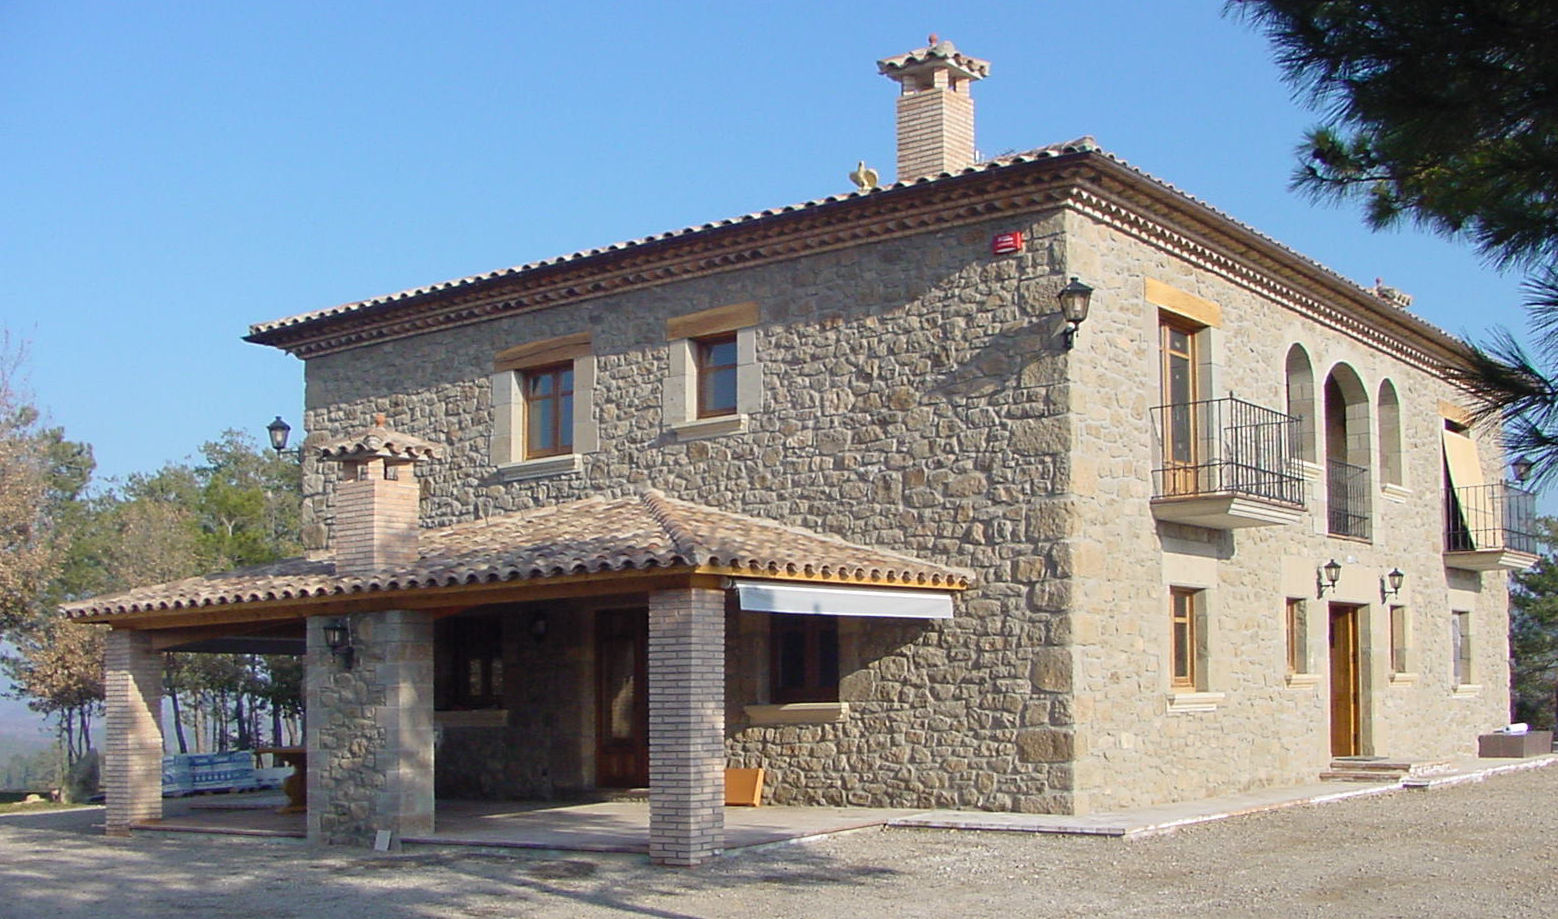 Casa de turismo rural en la Torre d'Oristà (Barcelona), ALENTORN i ALENTORN ARQUITECTES, SLP ALENTORN i ALENTORN ARQUITECTES, SLP Nhà phong cách mộc mạc Cục đá